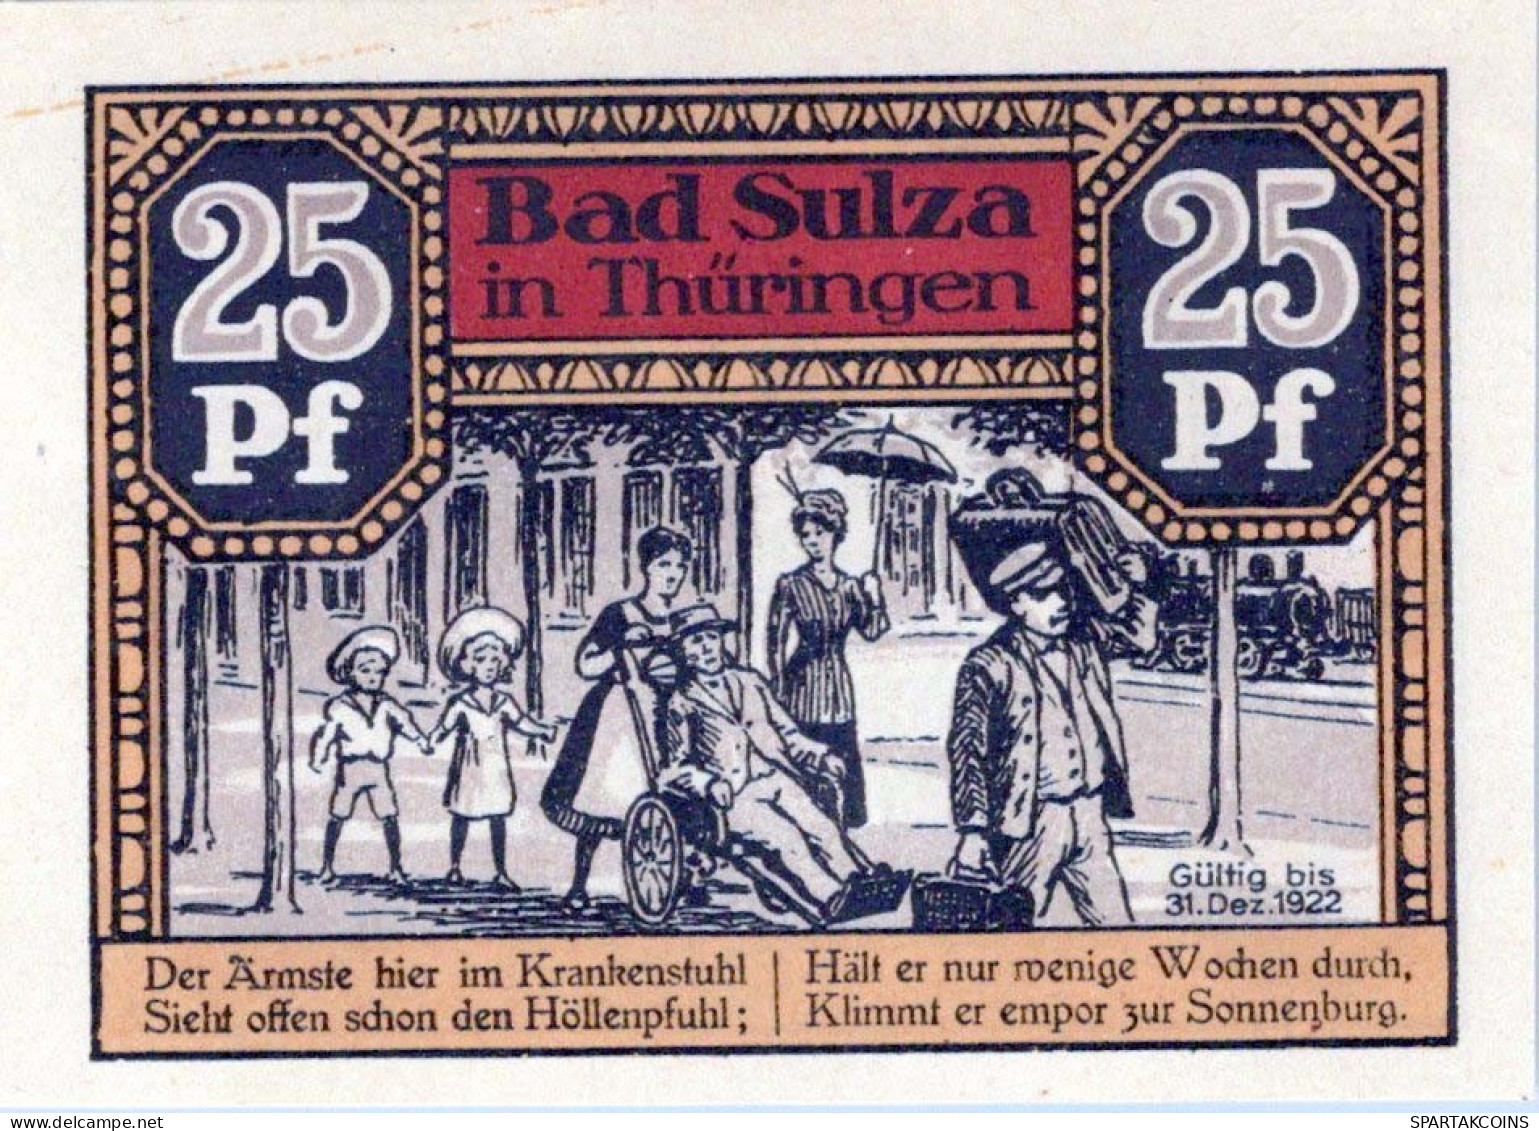 25 PFENNIG 1922 Stadt BAD SULZA Thuringia UNC DEUTSCHLAND Notgeld #PI040 - [11] Local Banknote Issues